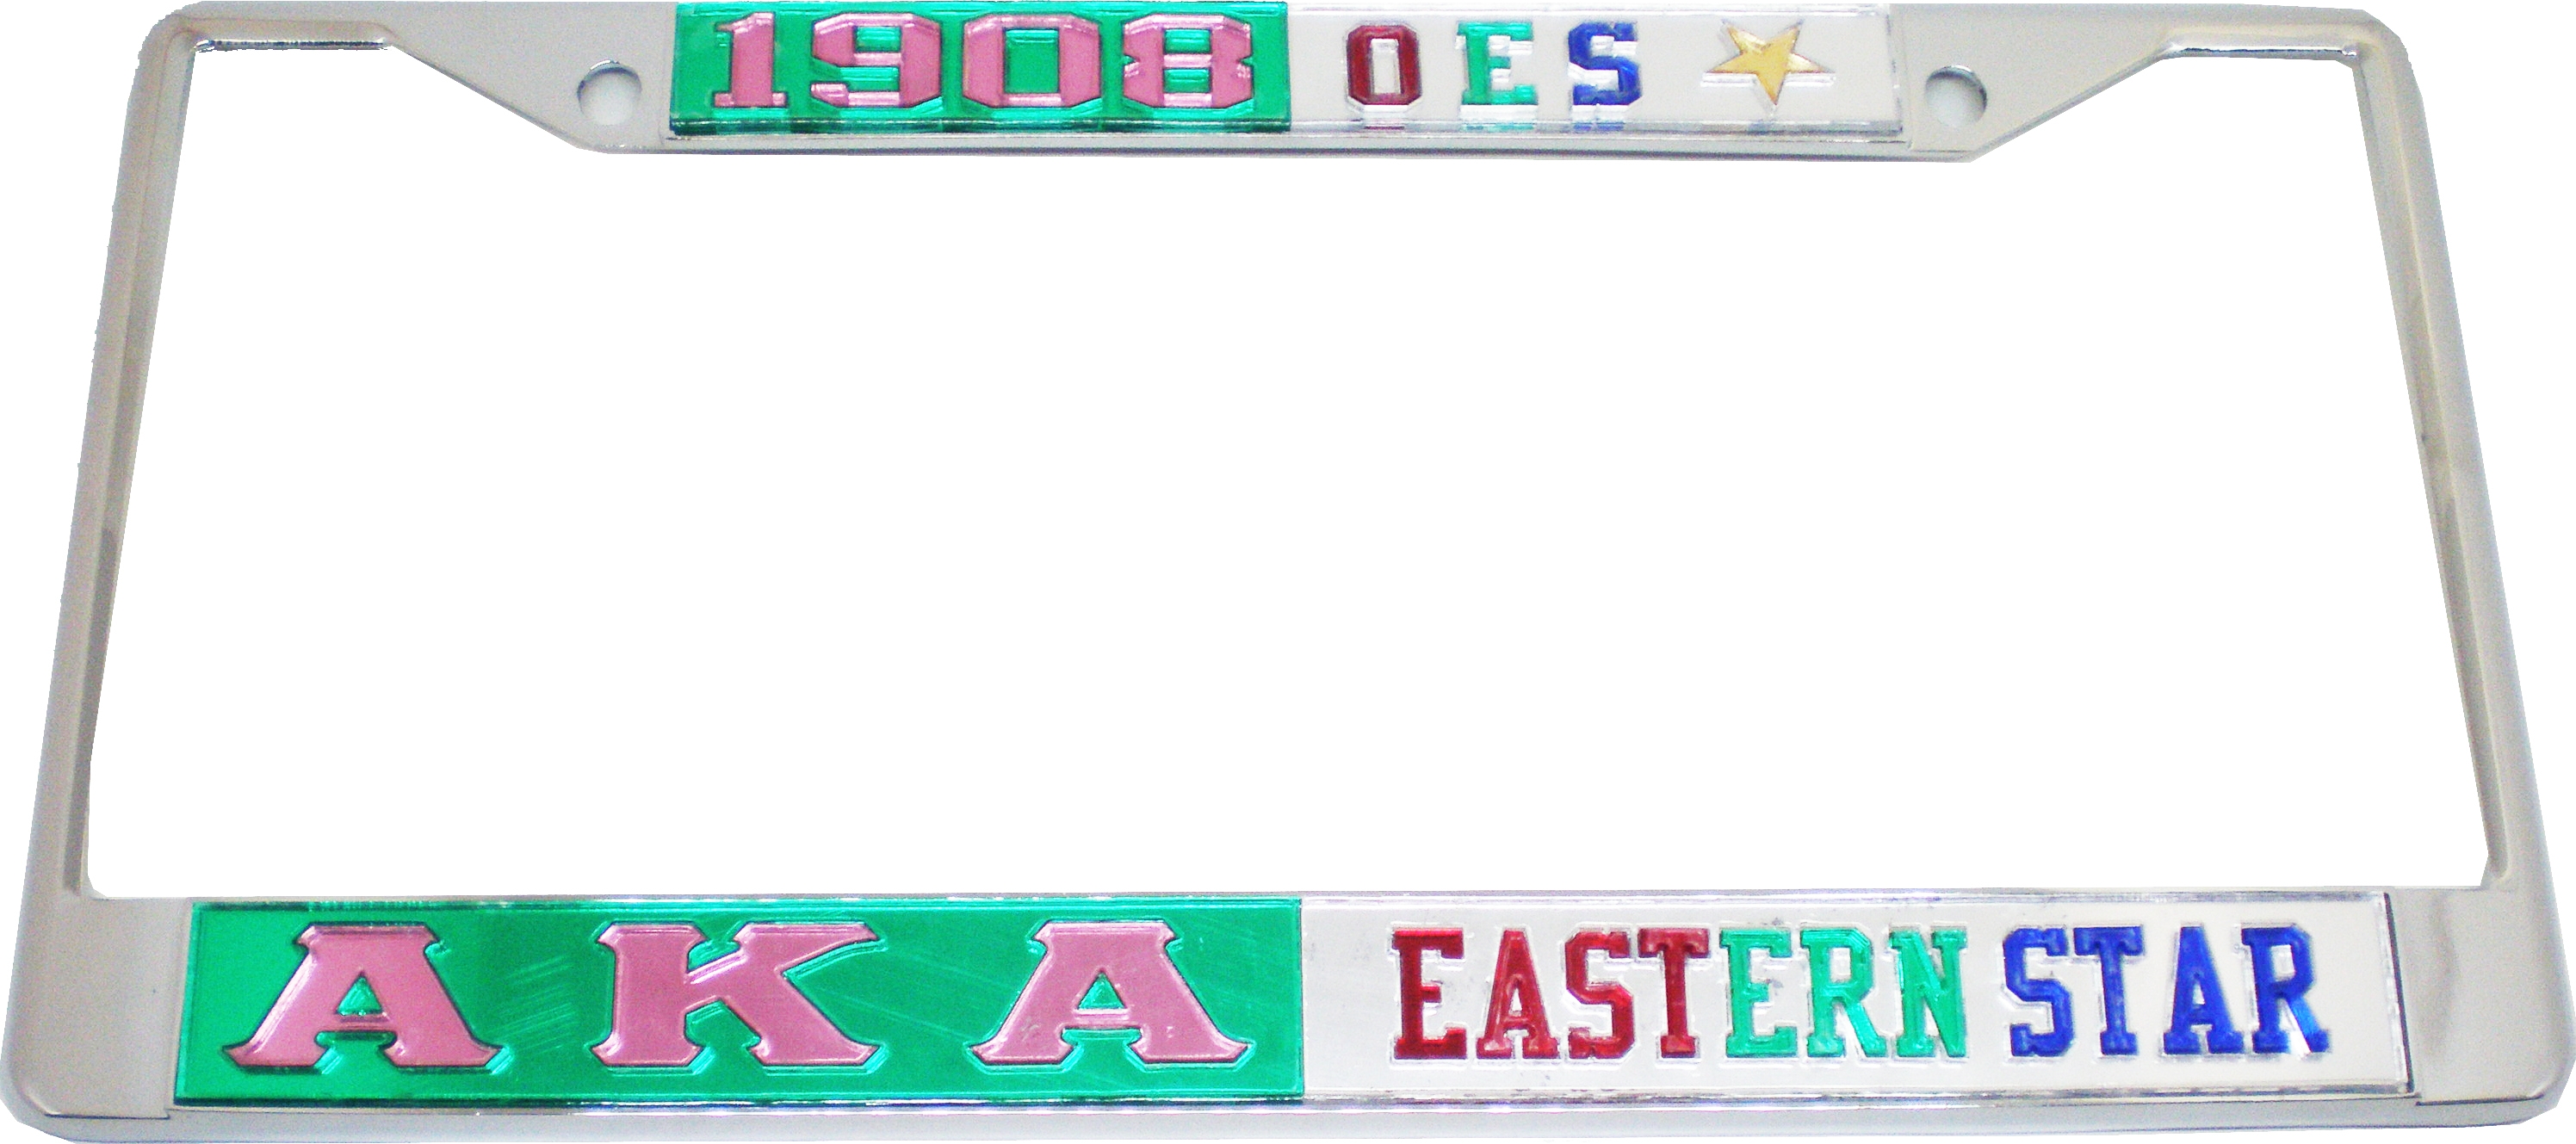 Alpha Kappa Alpha + Eastern Star Split License Plate Frame The Cultural Exchange Shop